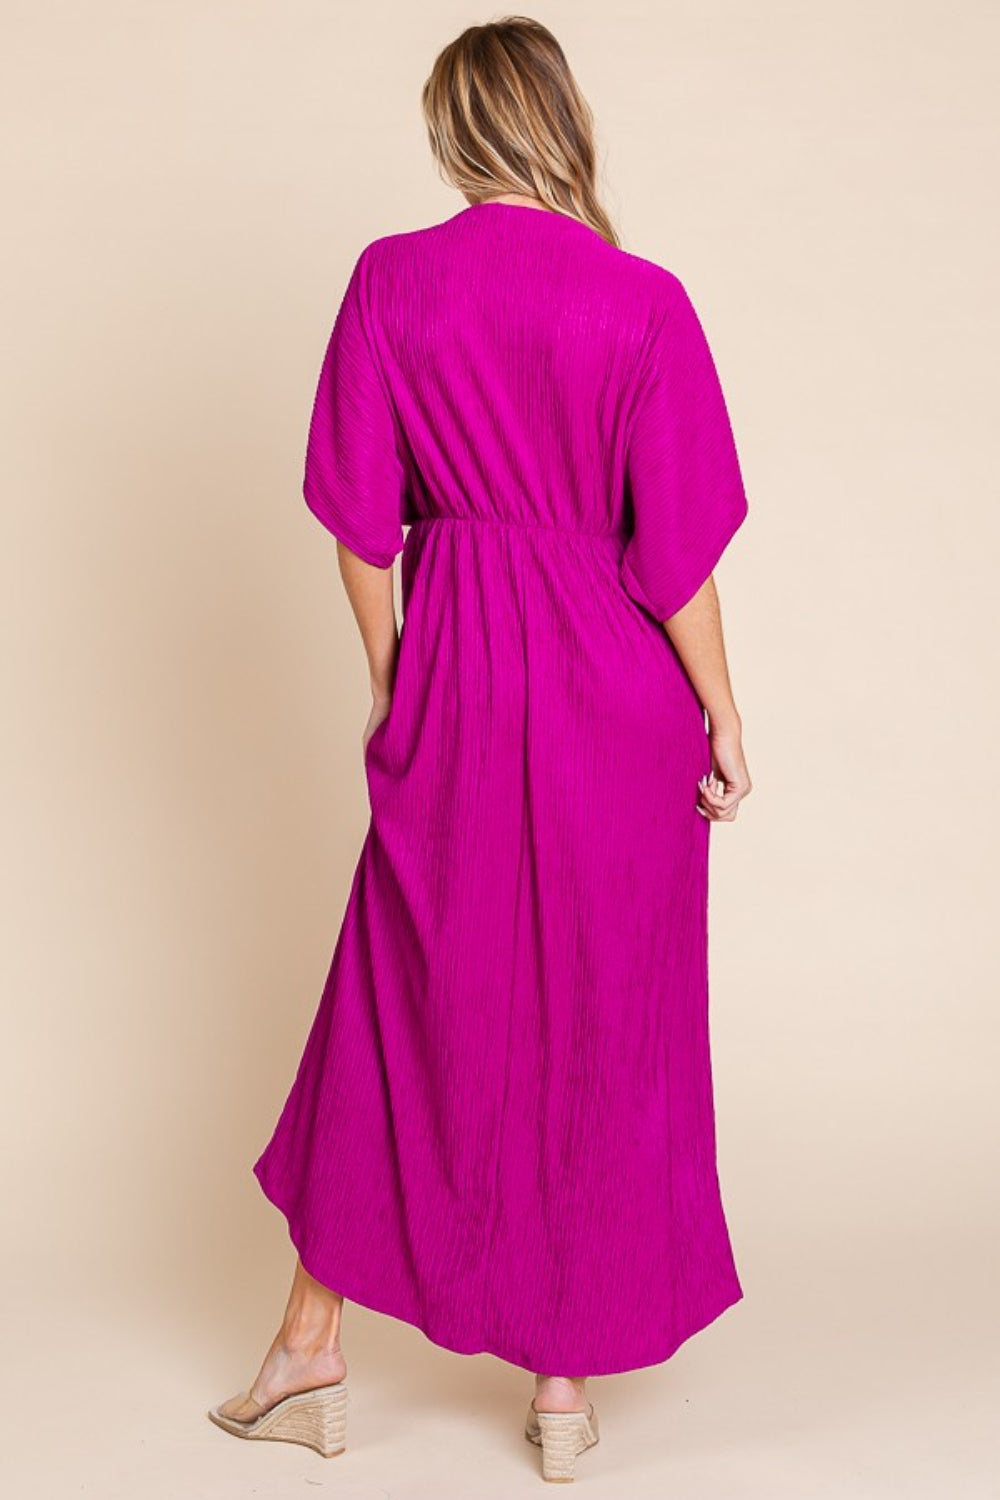 TEEK - Pocketed Magenta Maxi Dress DRESS TEEK Trend   